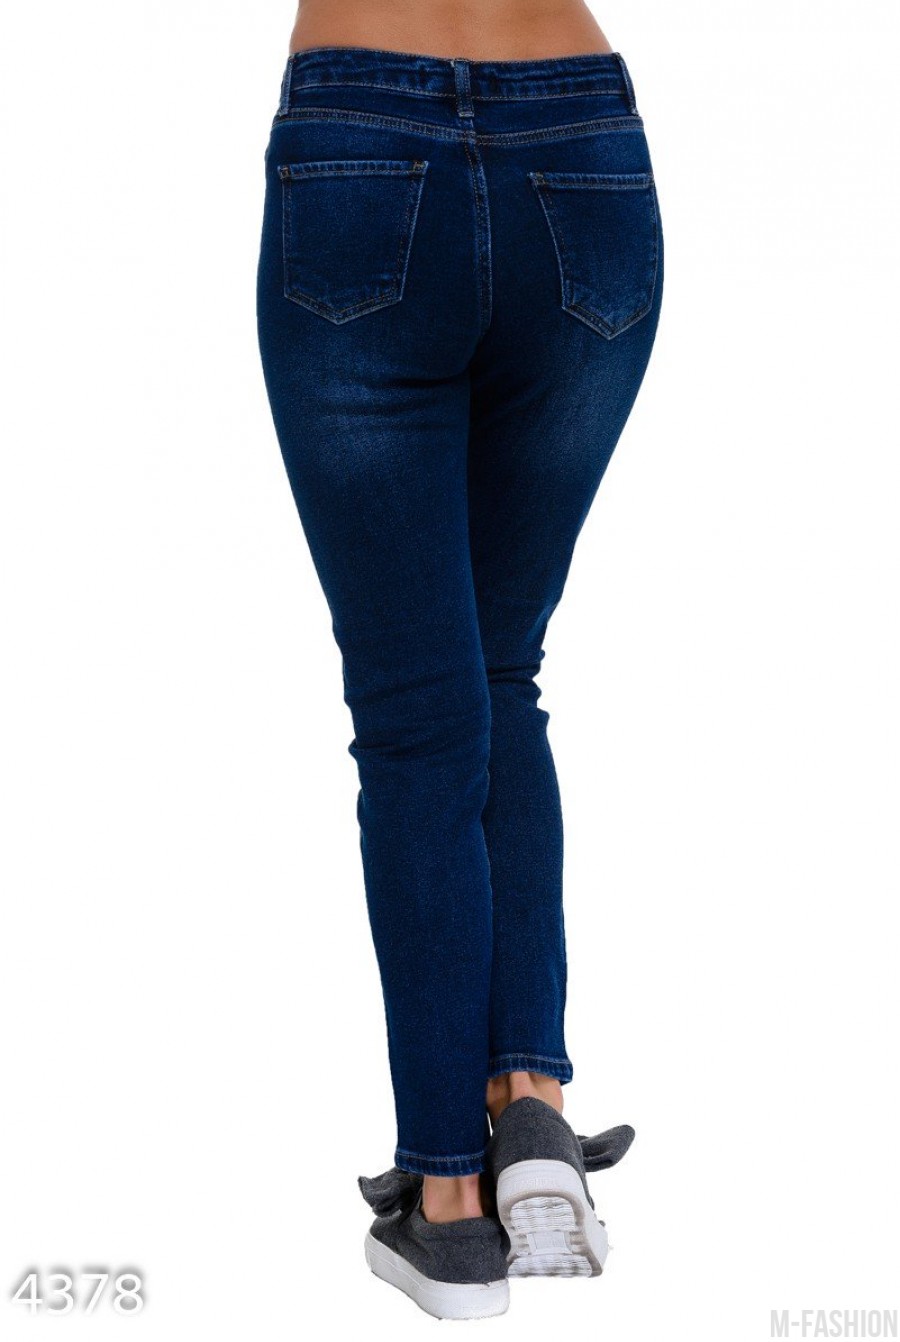 Синие классические джинсы покрытые до колен серебристой краской- Фото 3